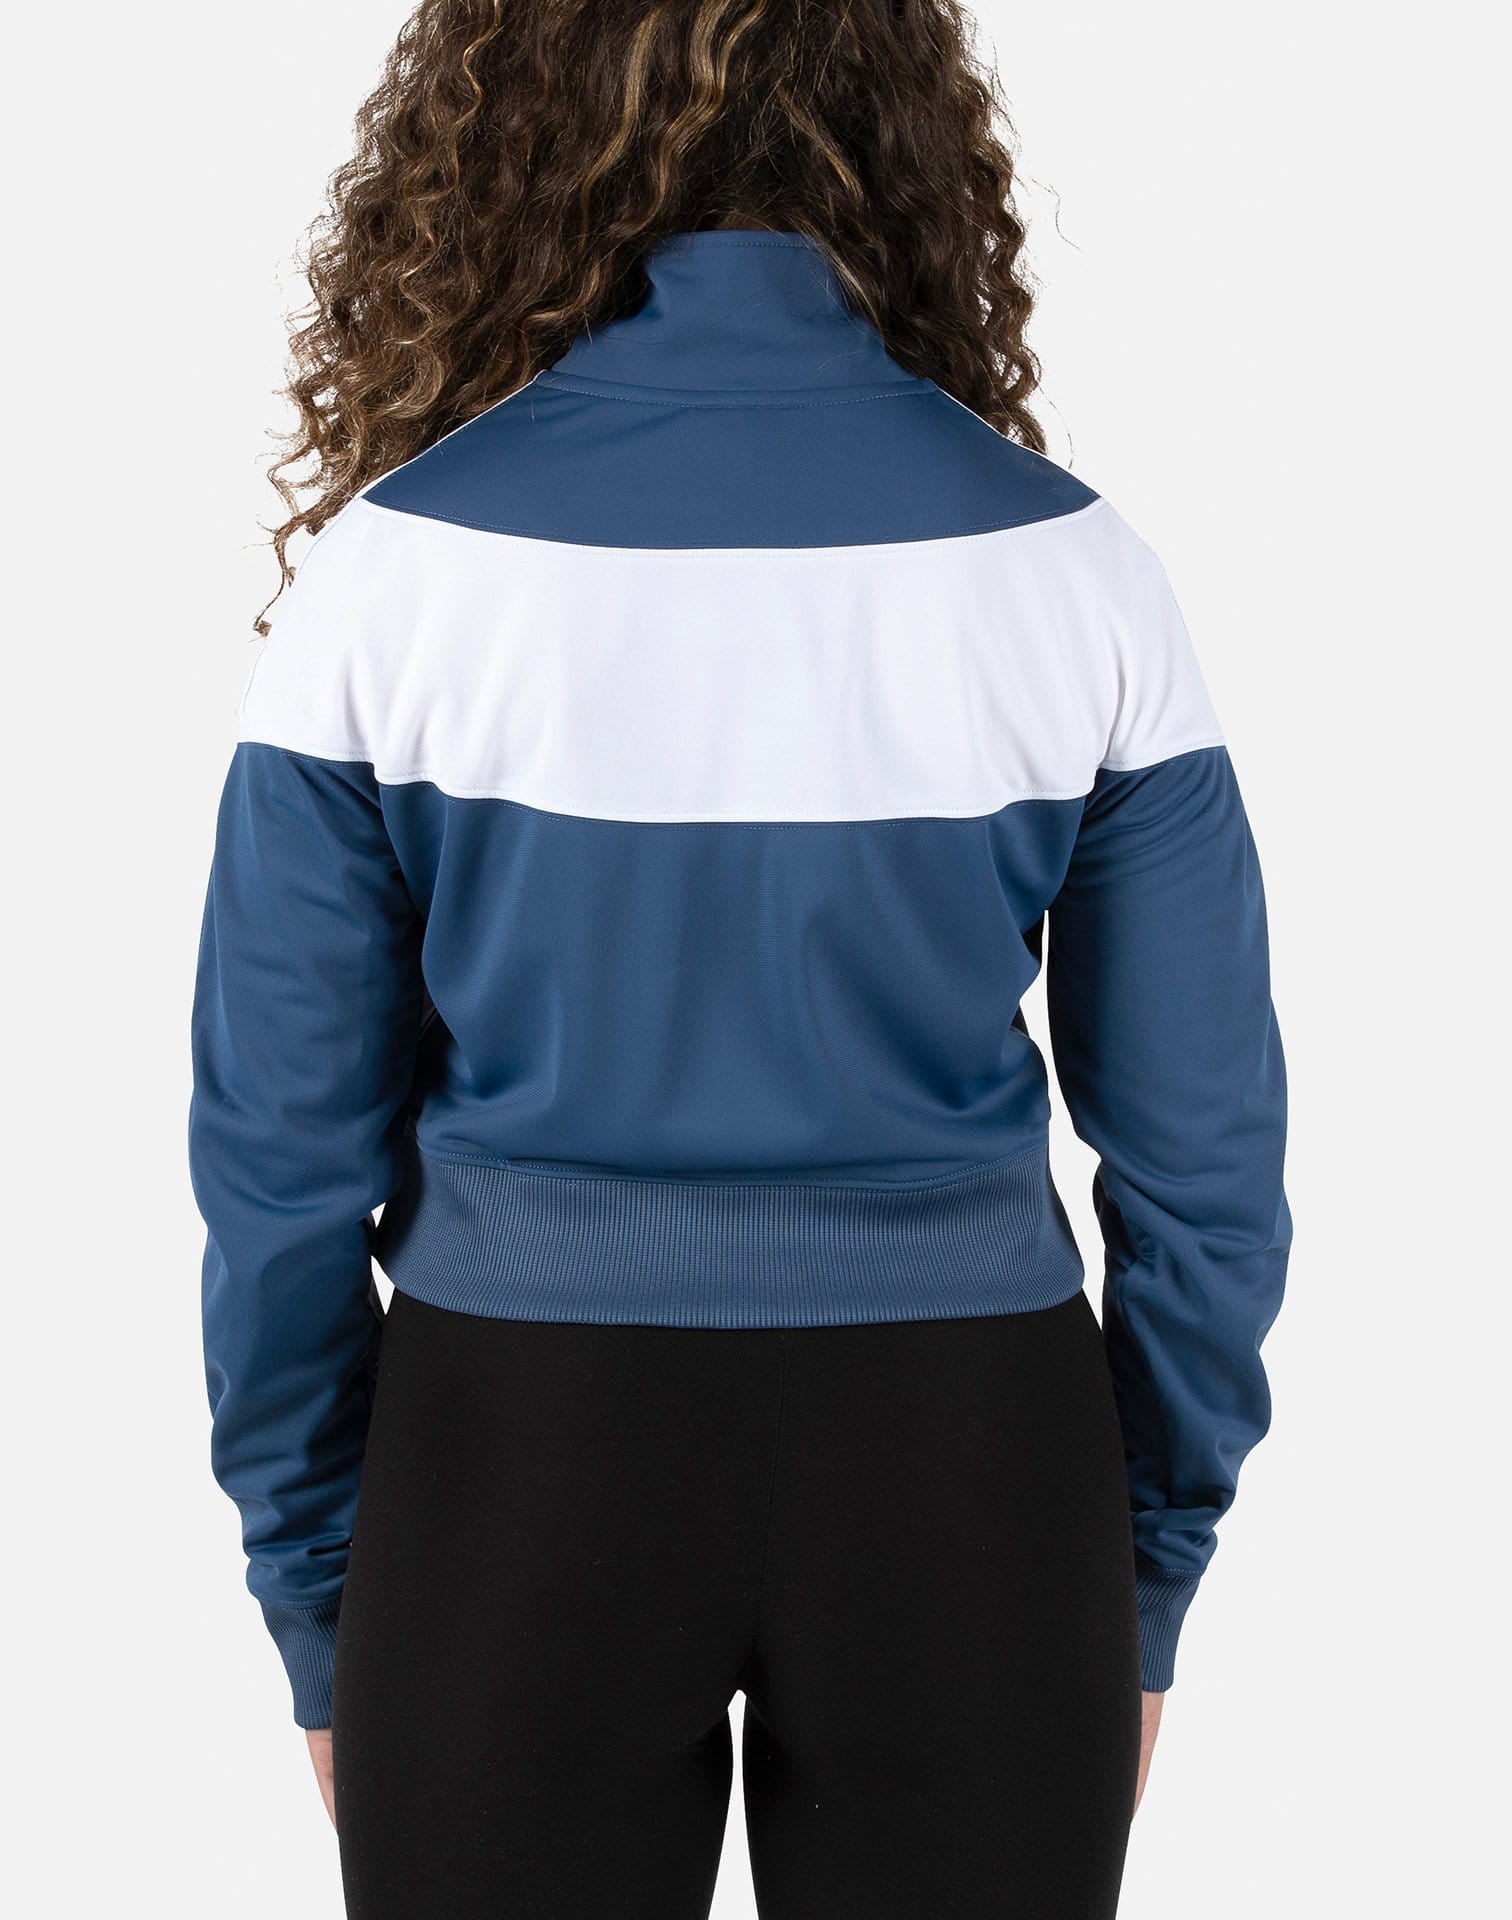 Nike Women's Heritage Track Jacket